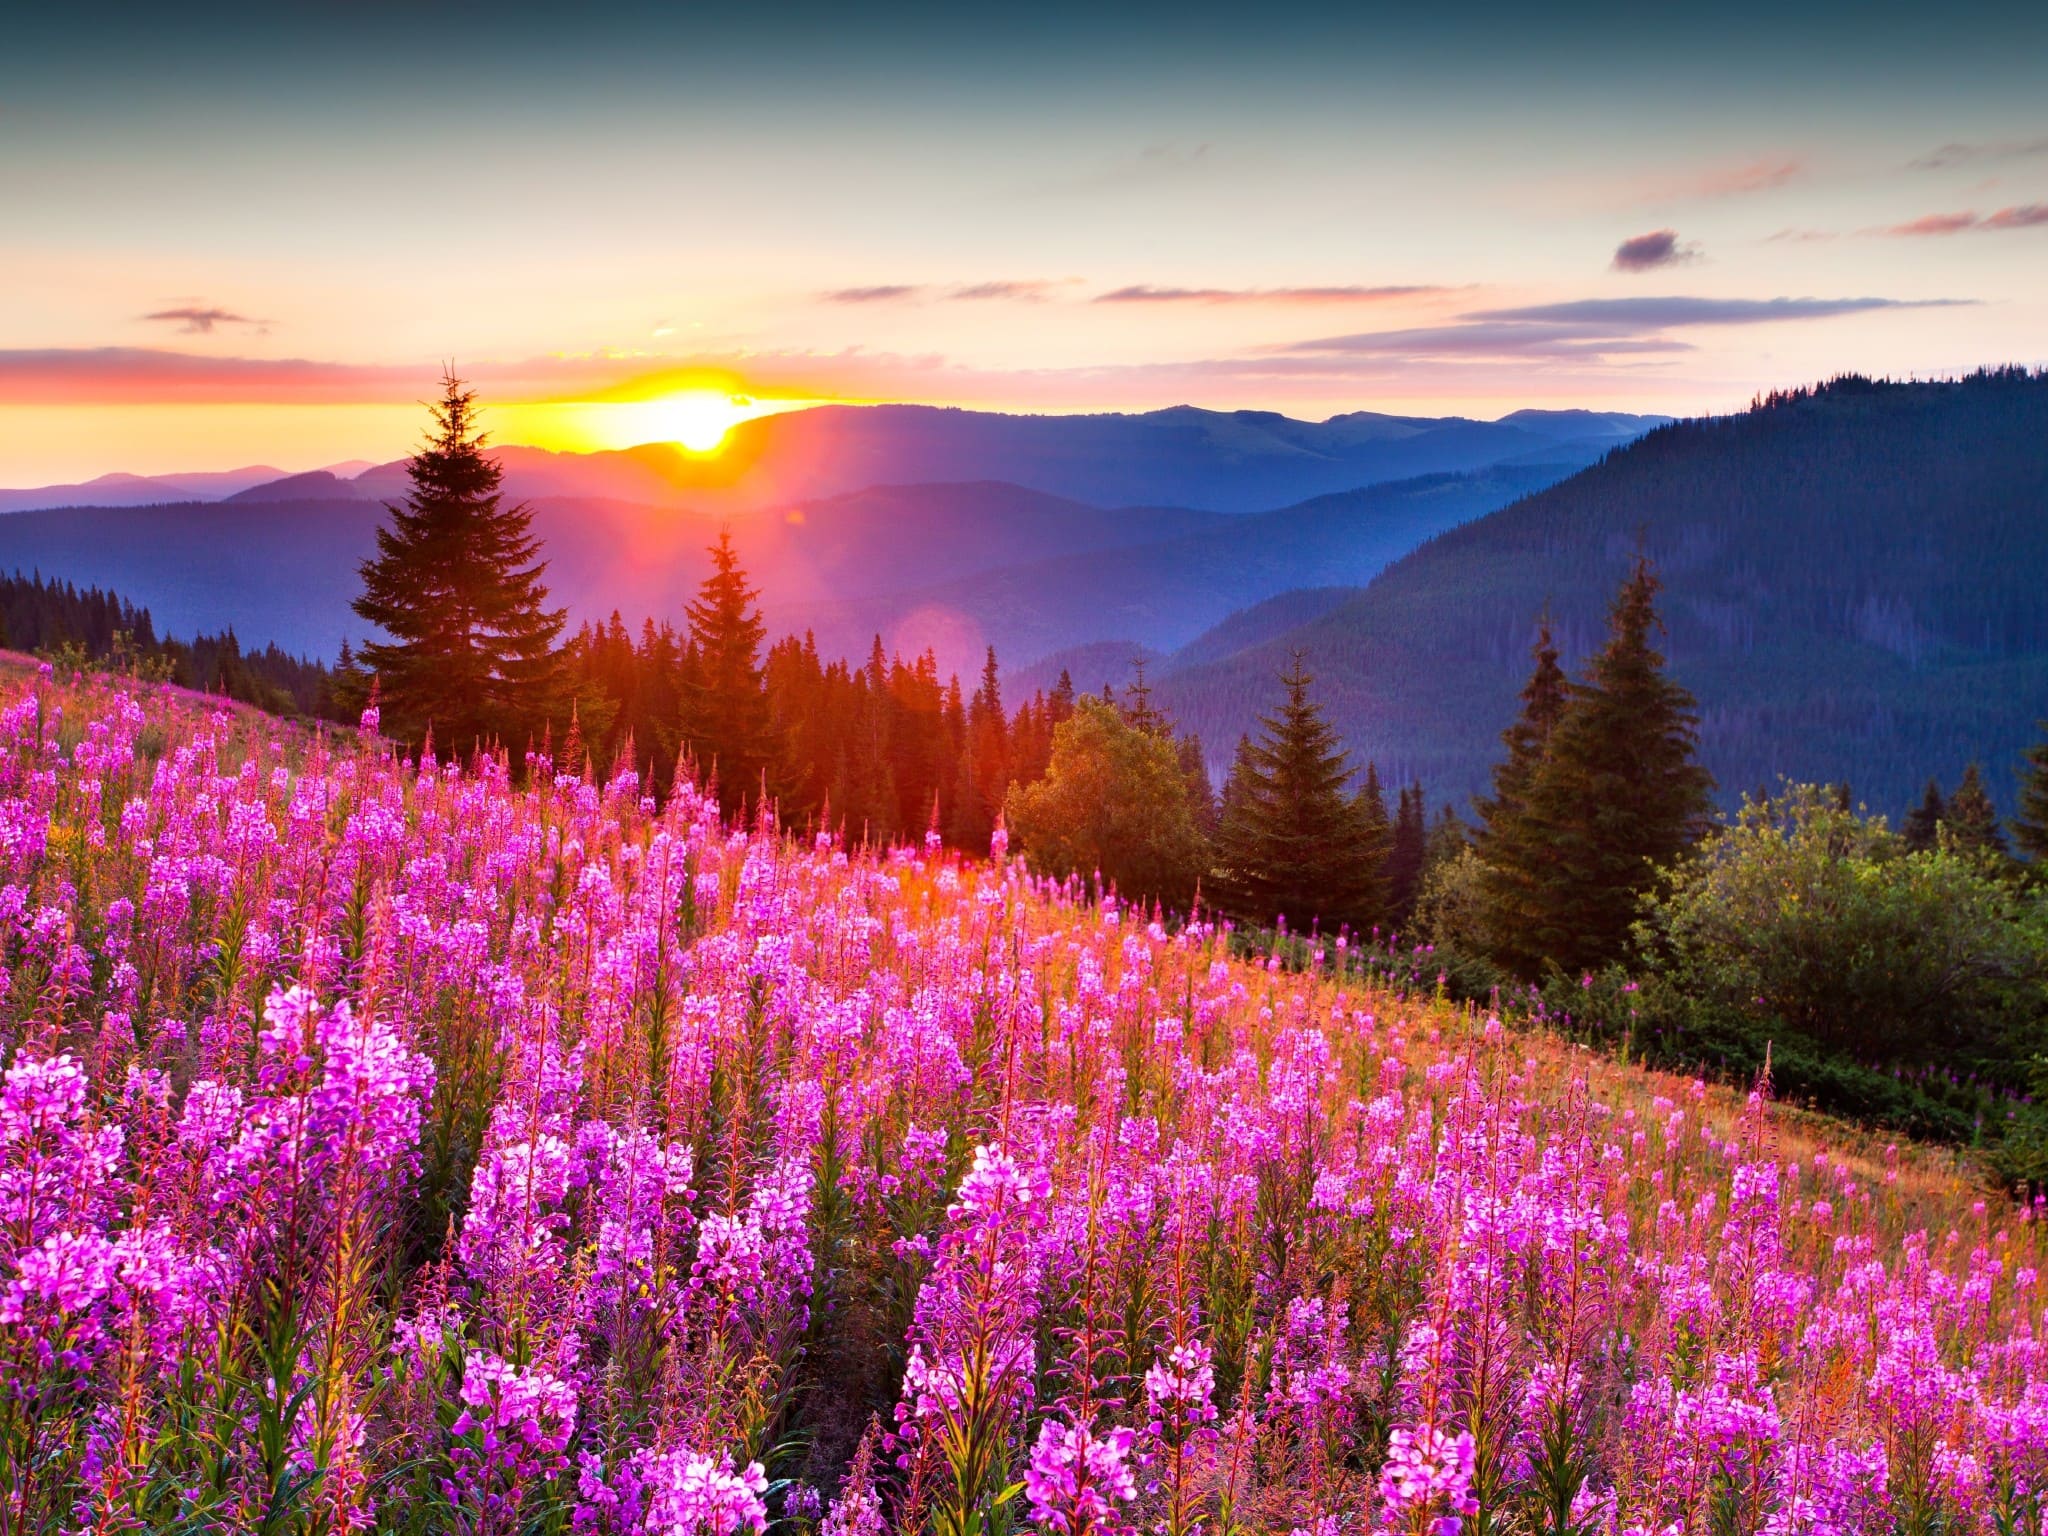 Immagini con splendidi paesaggi estivi. 100 fotografie da decorare il tuo desktop